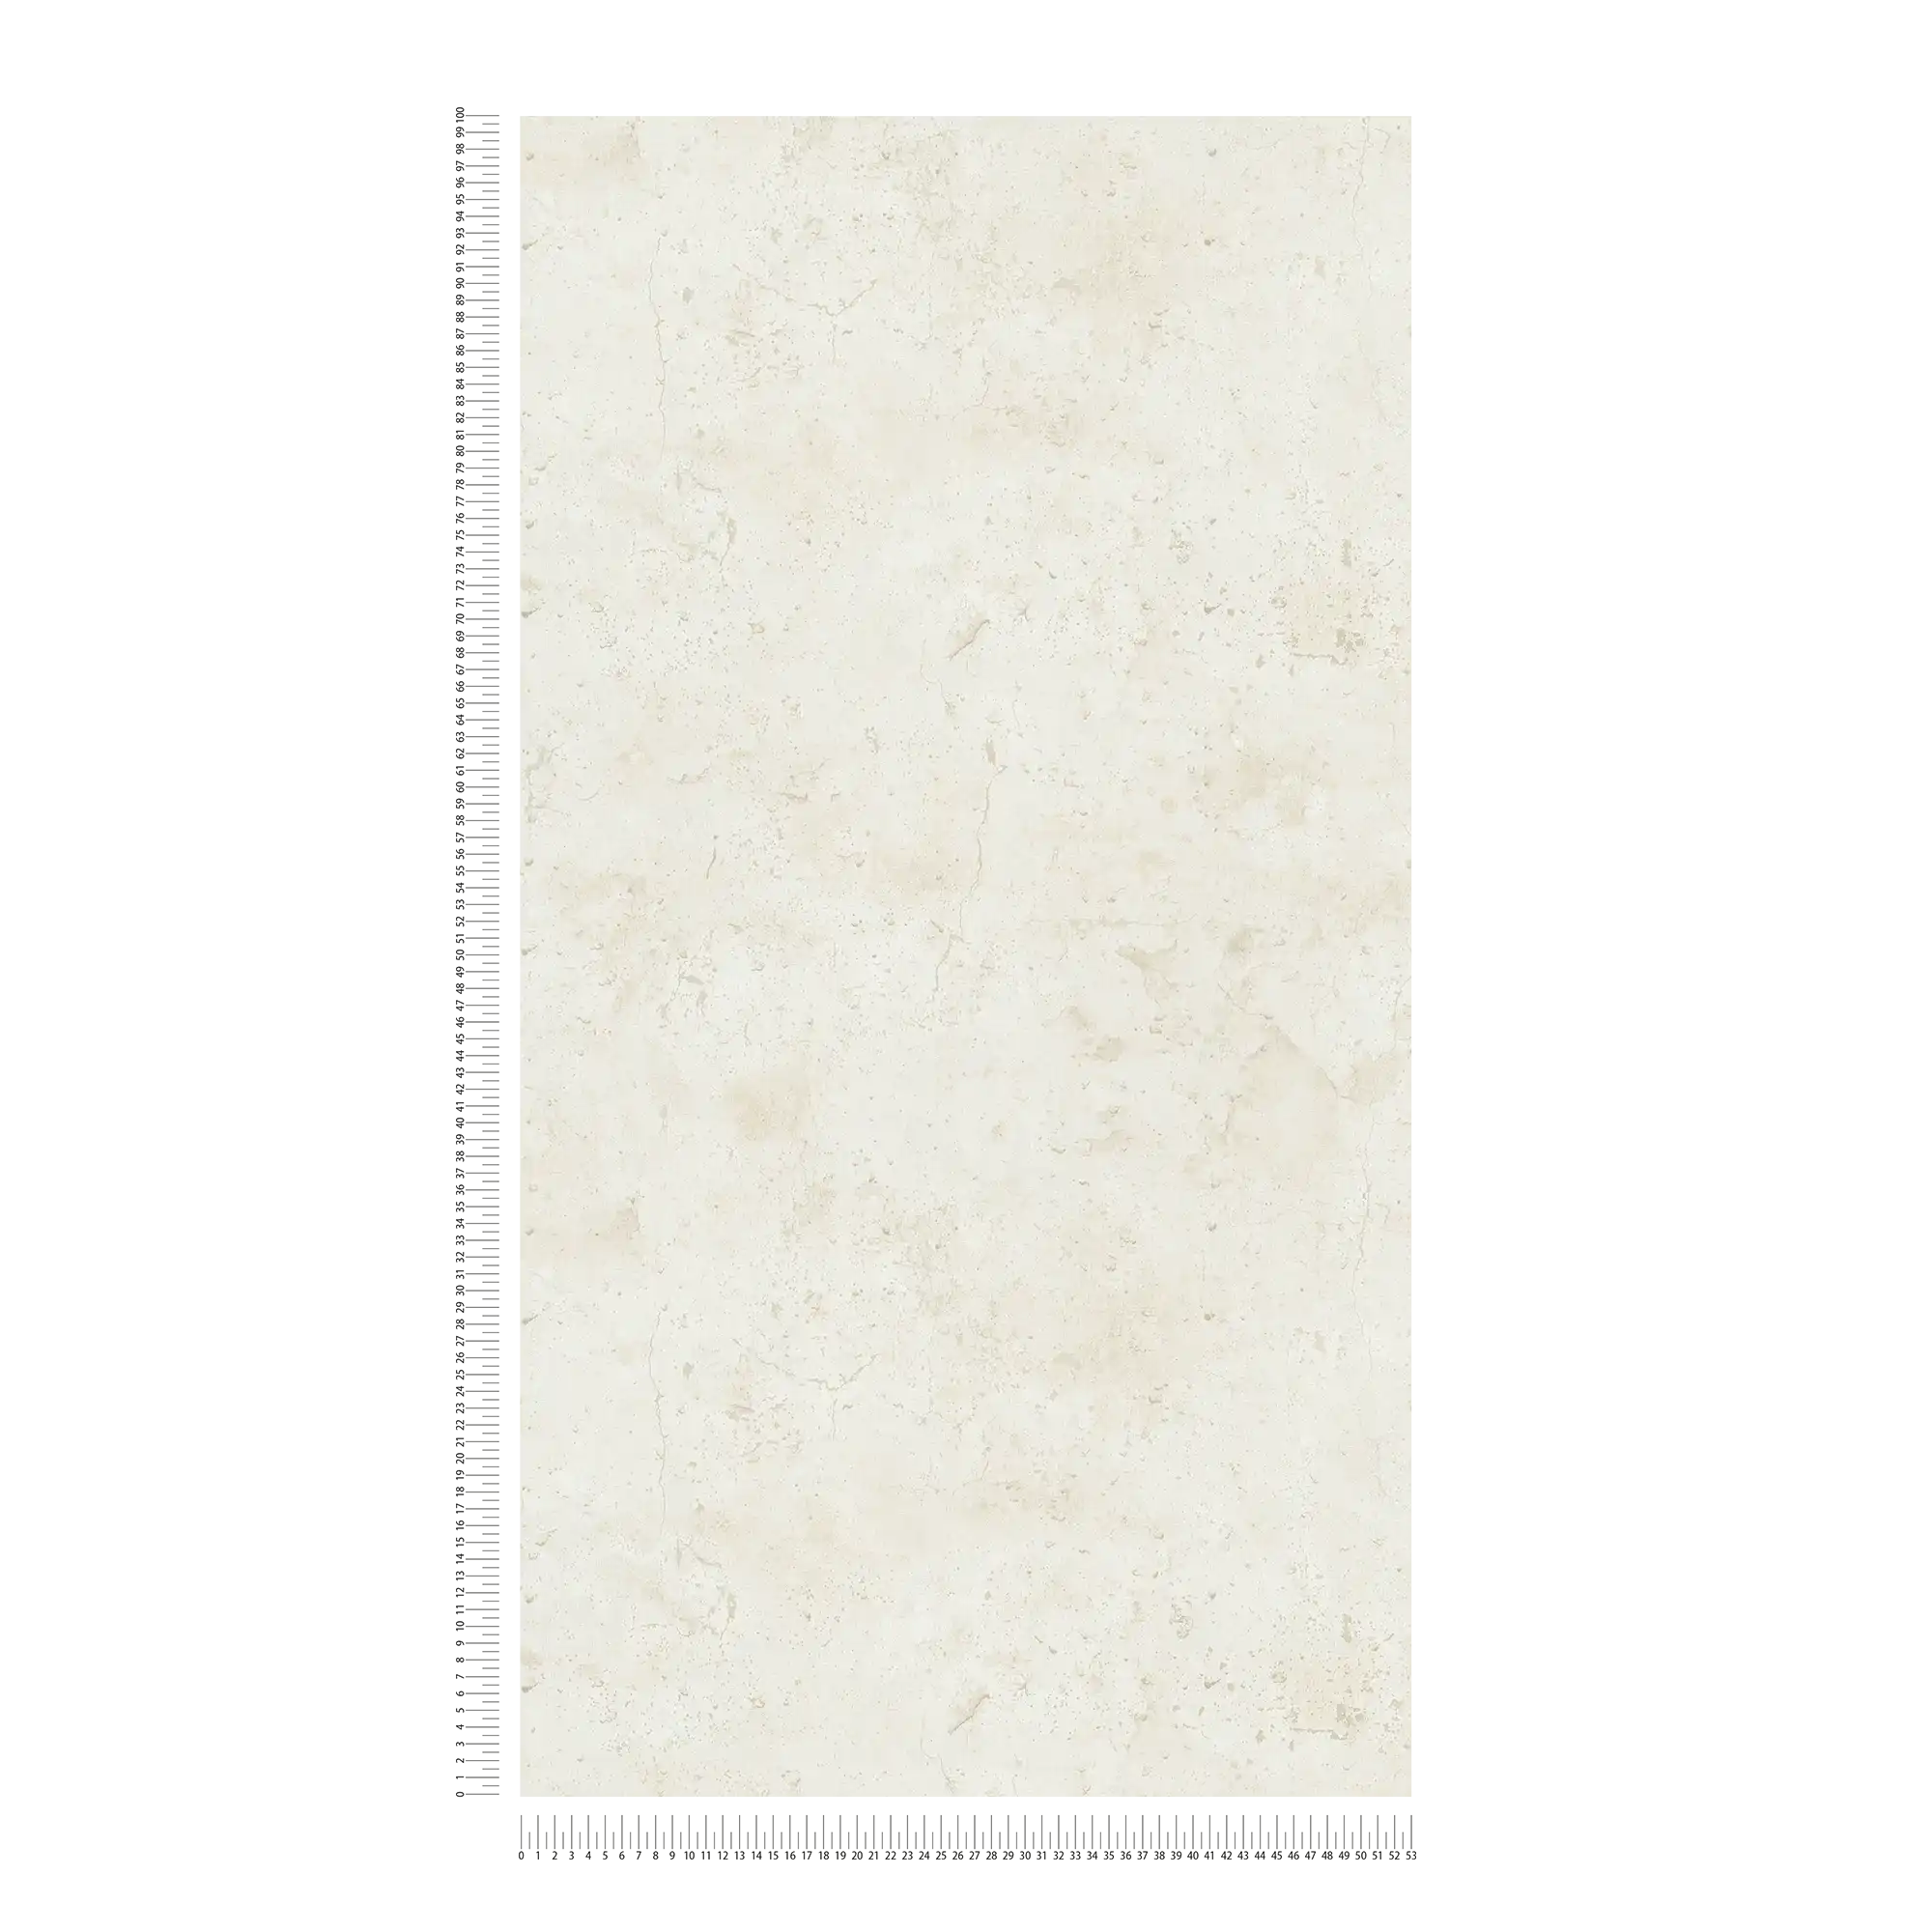             Papier peint béton style industriel - crème, blanc
        